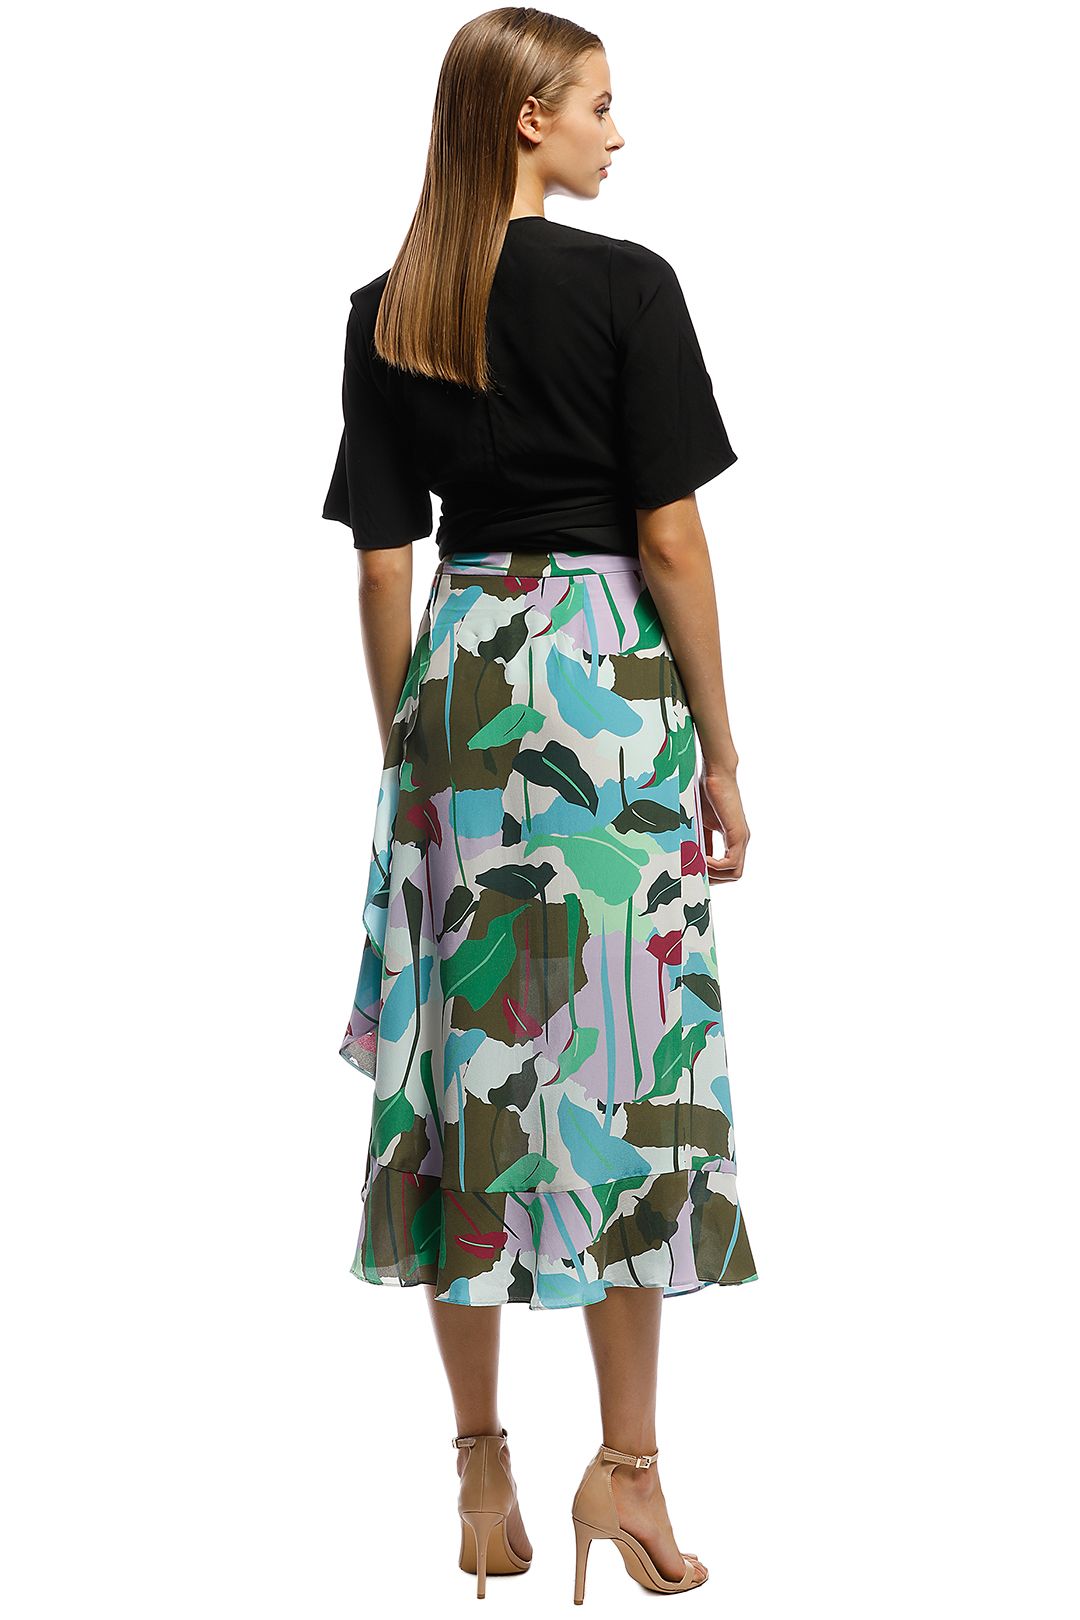 Gorman - Philodendron Silk Skirt - Multi - Back